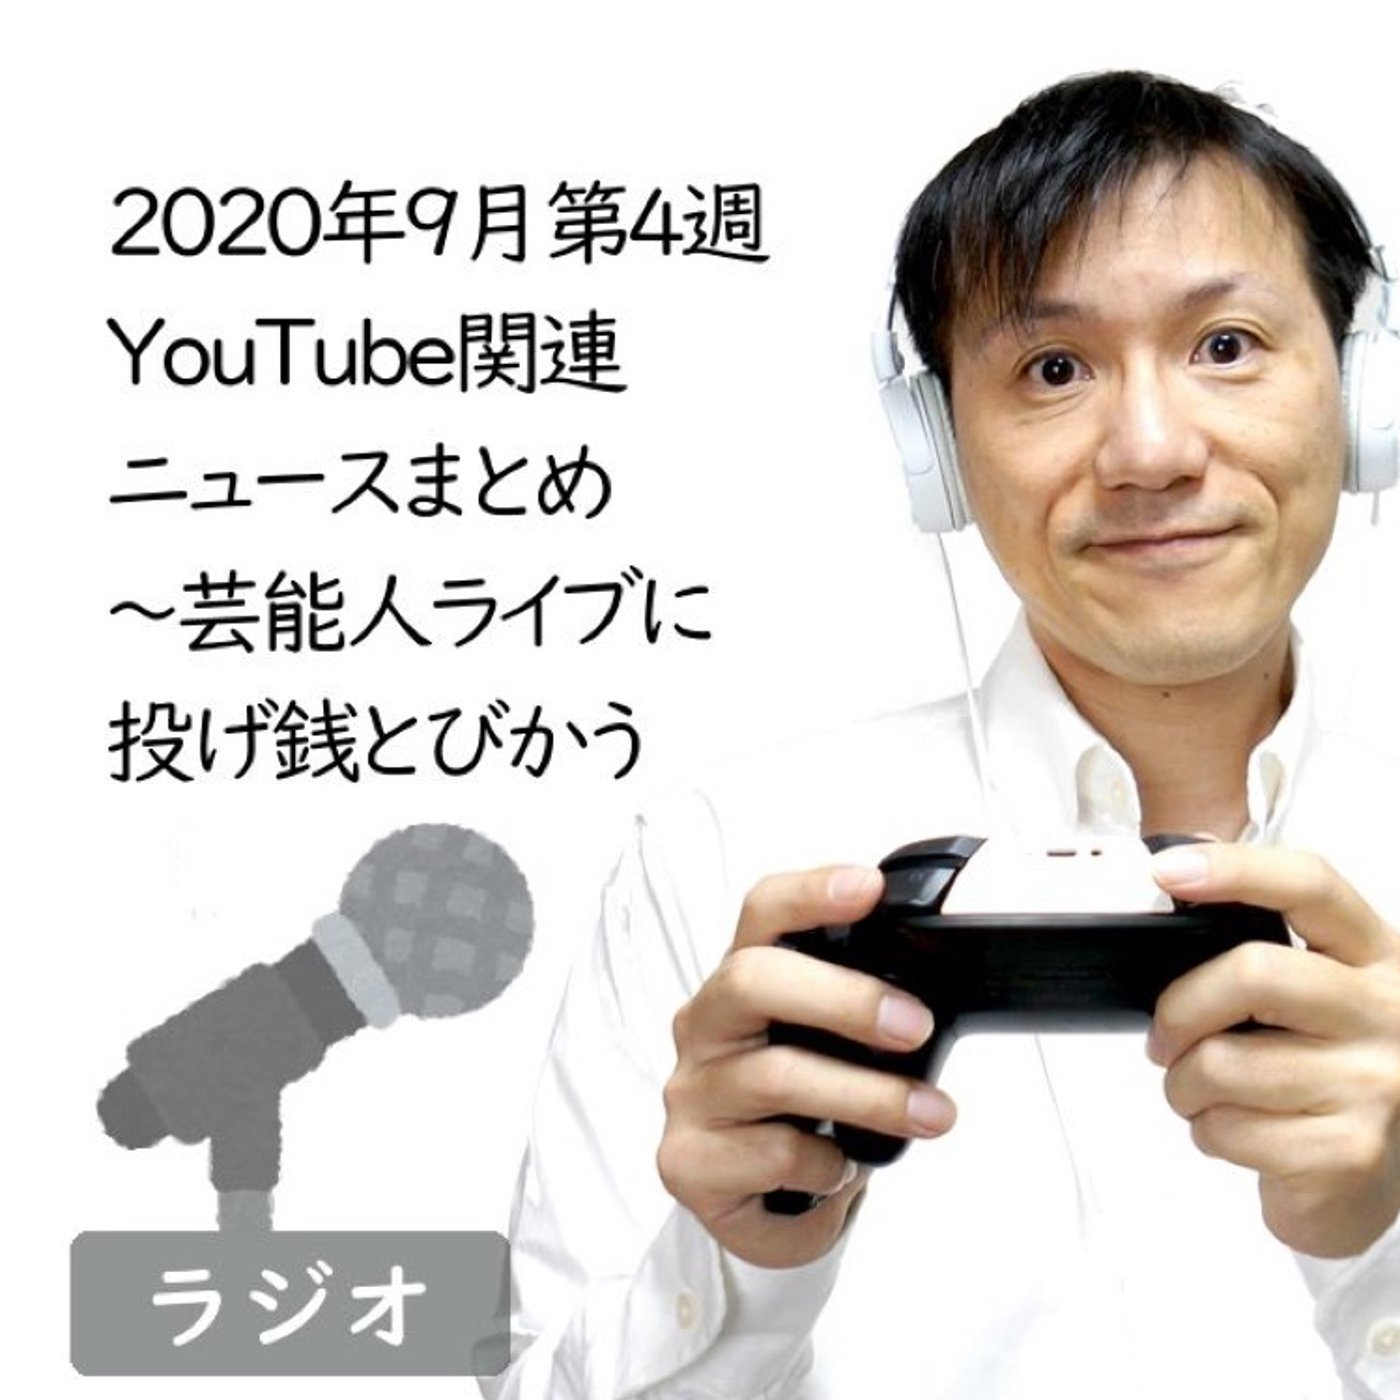 【#209】2020年9月第4週YouTube関連ニュースまとめ～TGS他